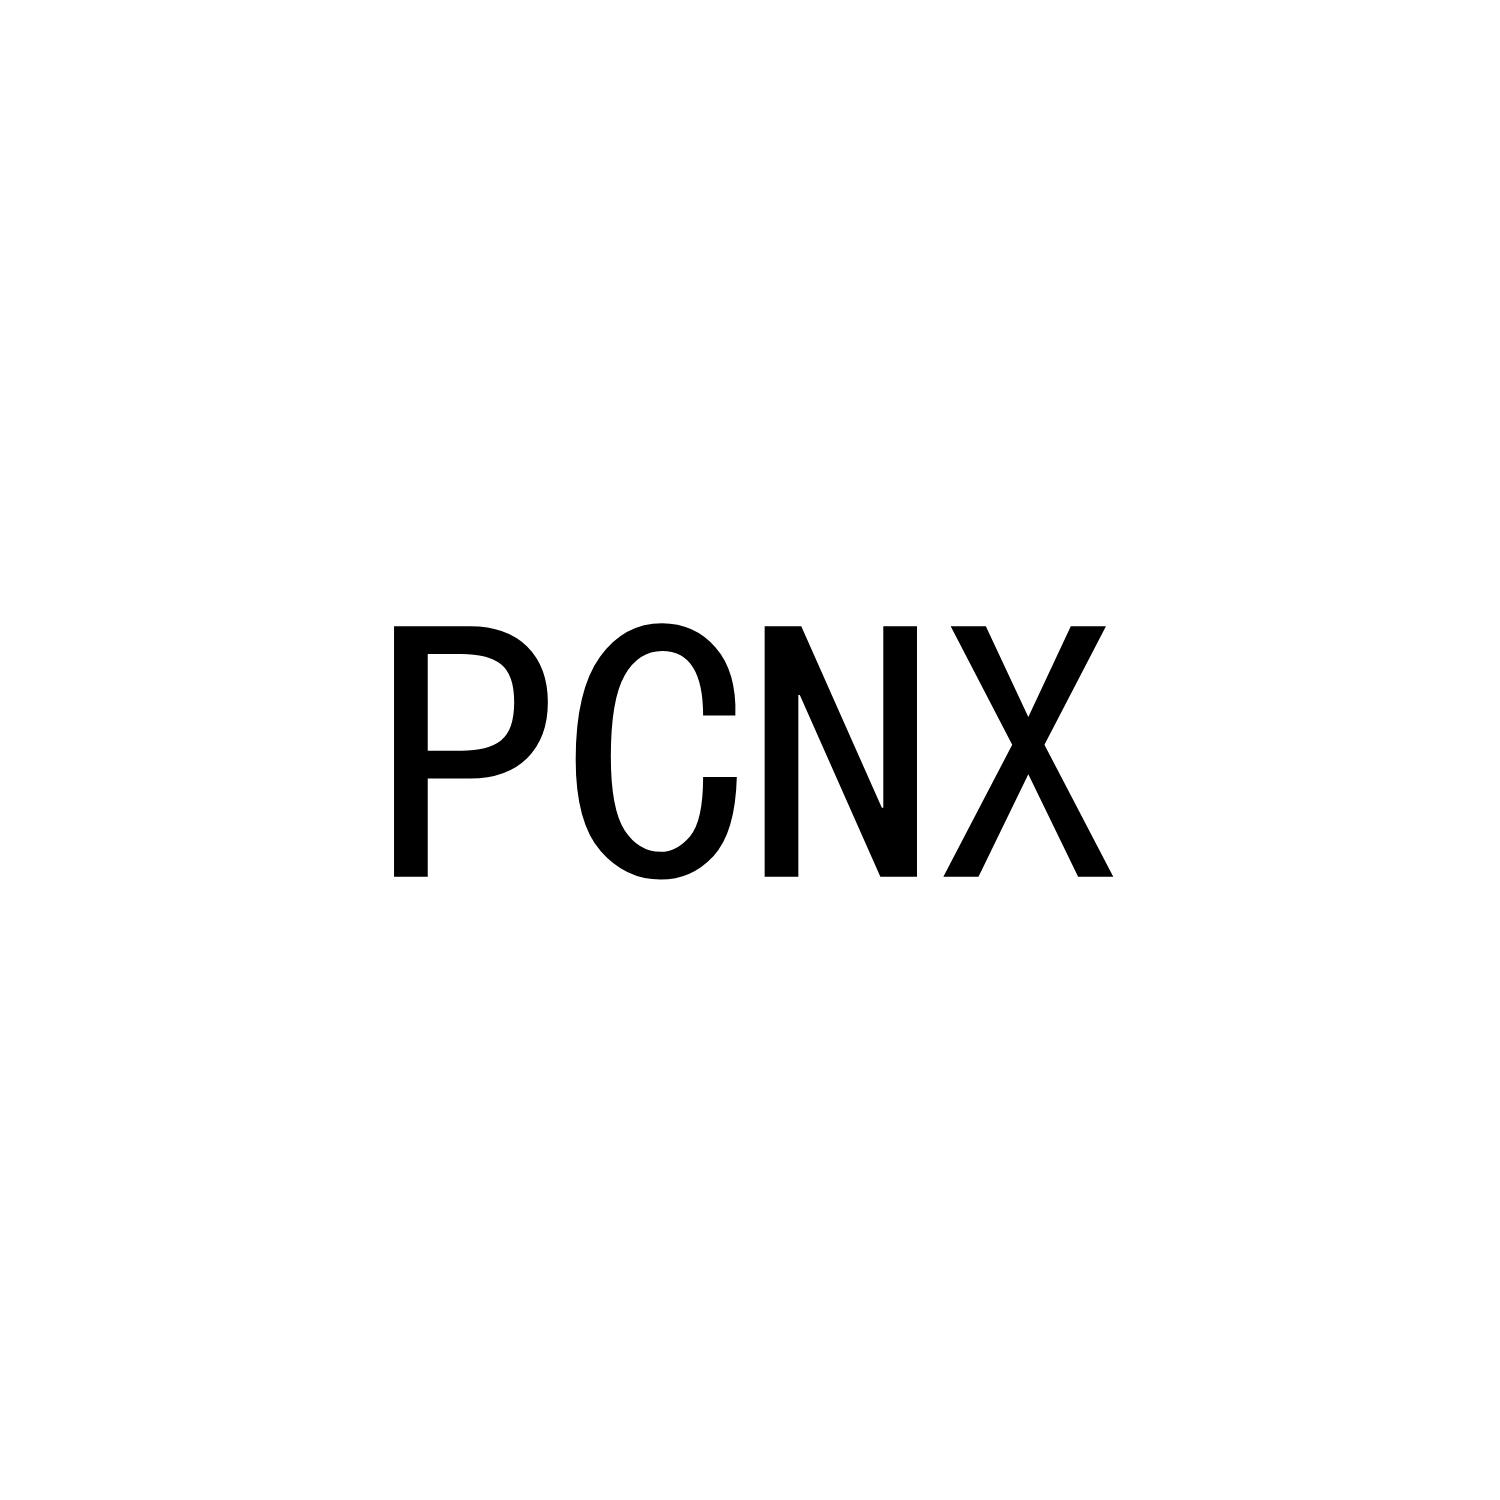 PCNX